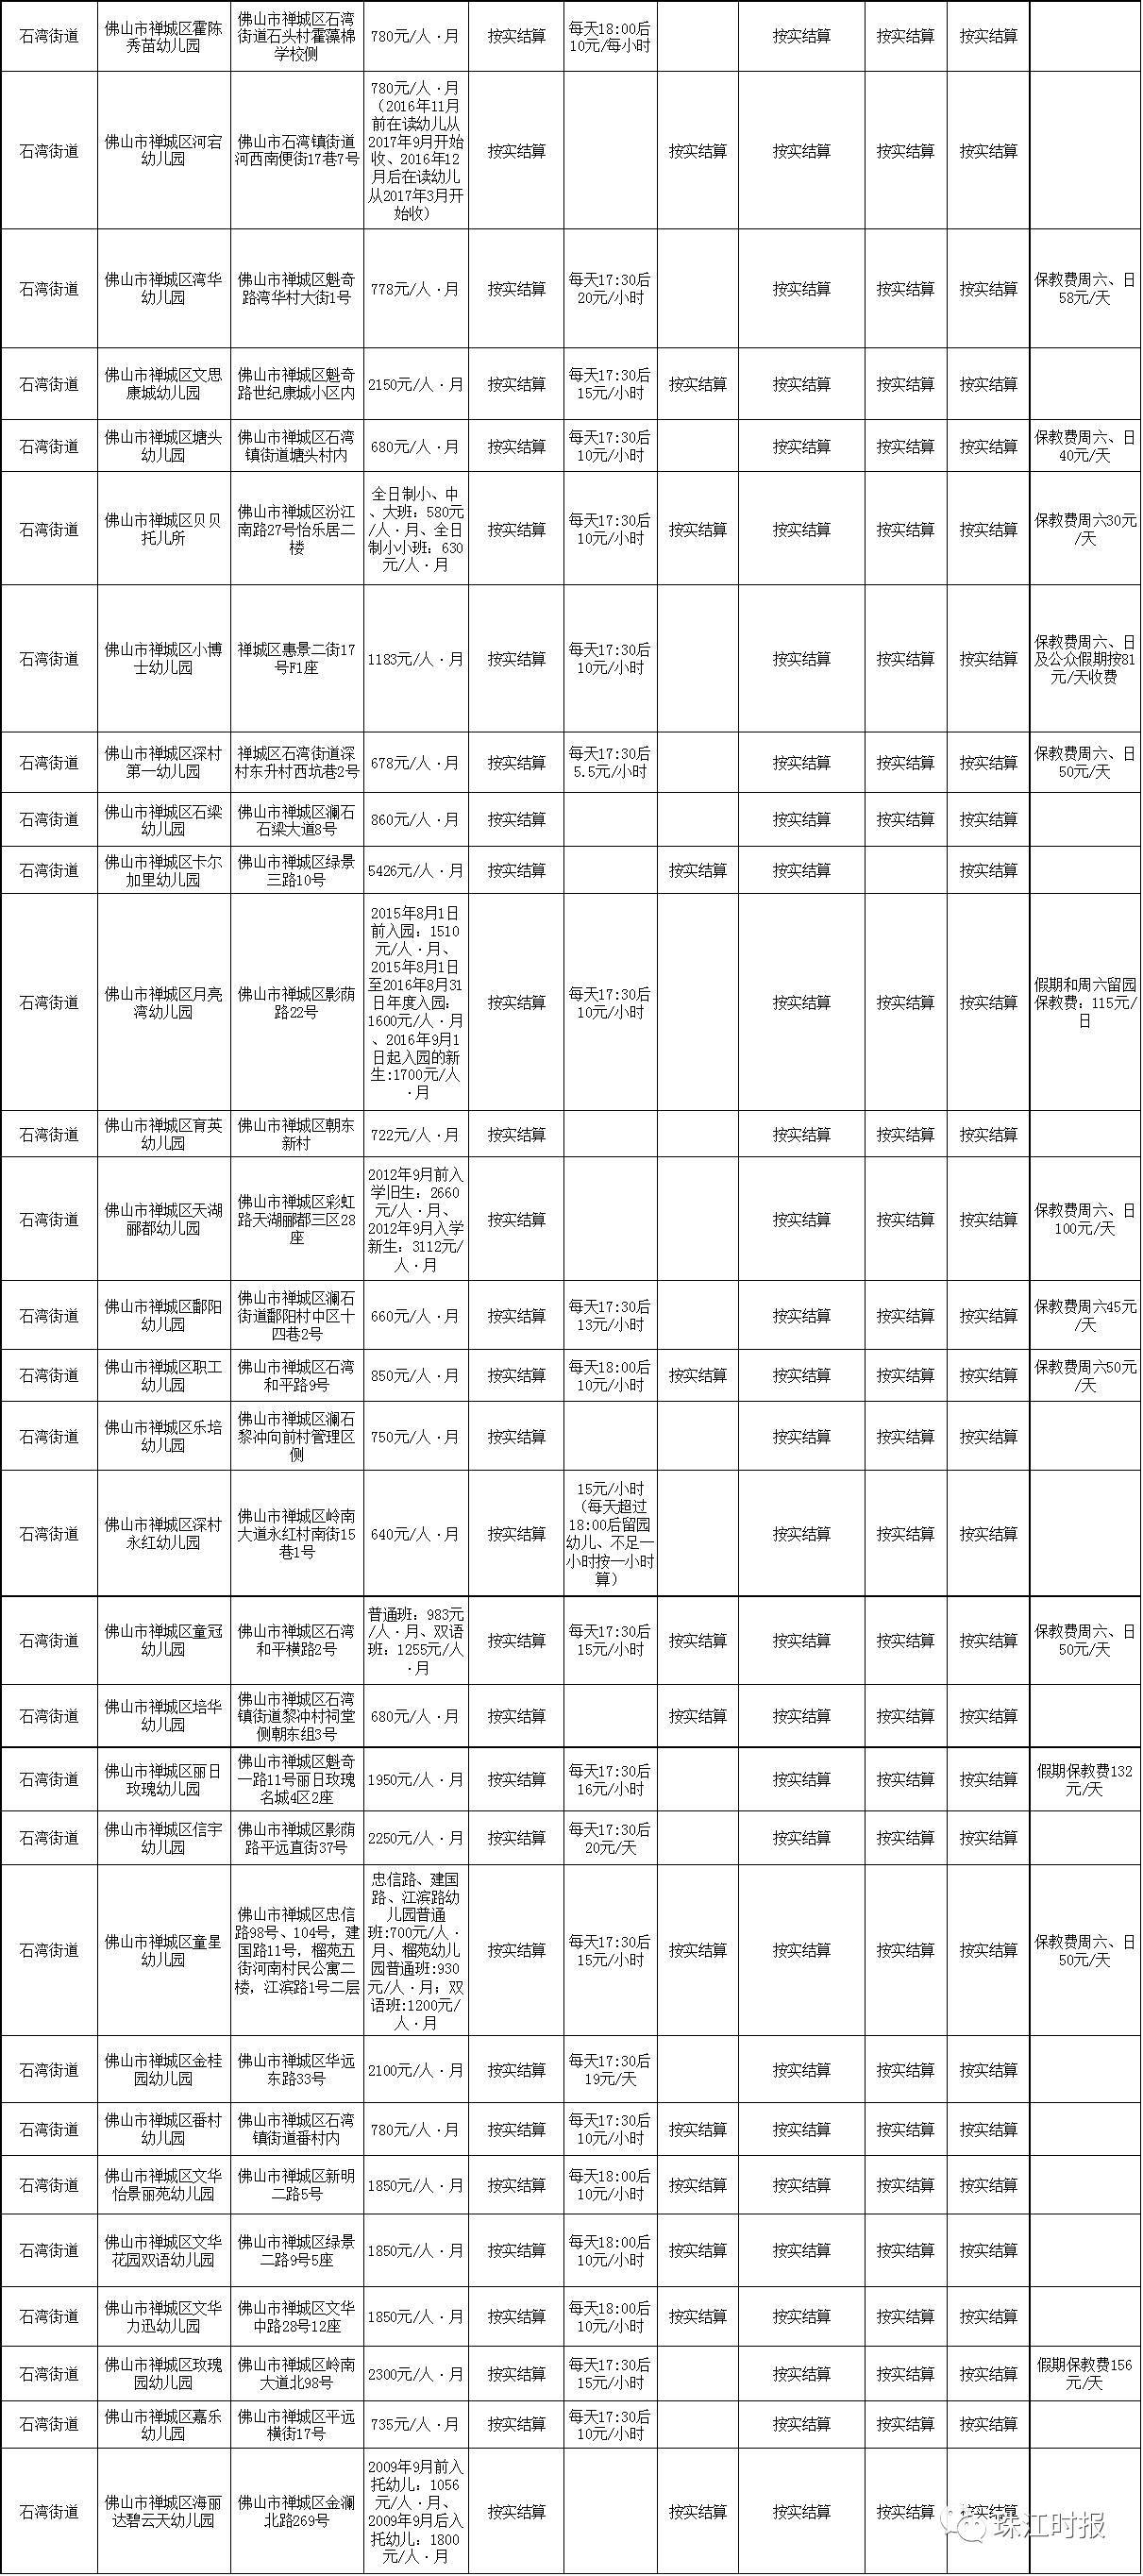 禅城民办幼儿园收费备案一览表 (拖动进度条查看) (点击查看大图)